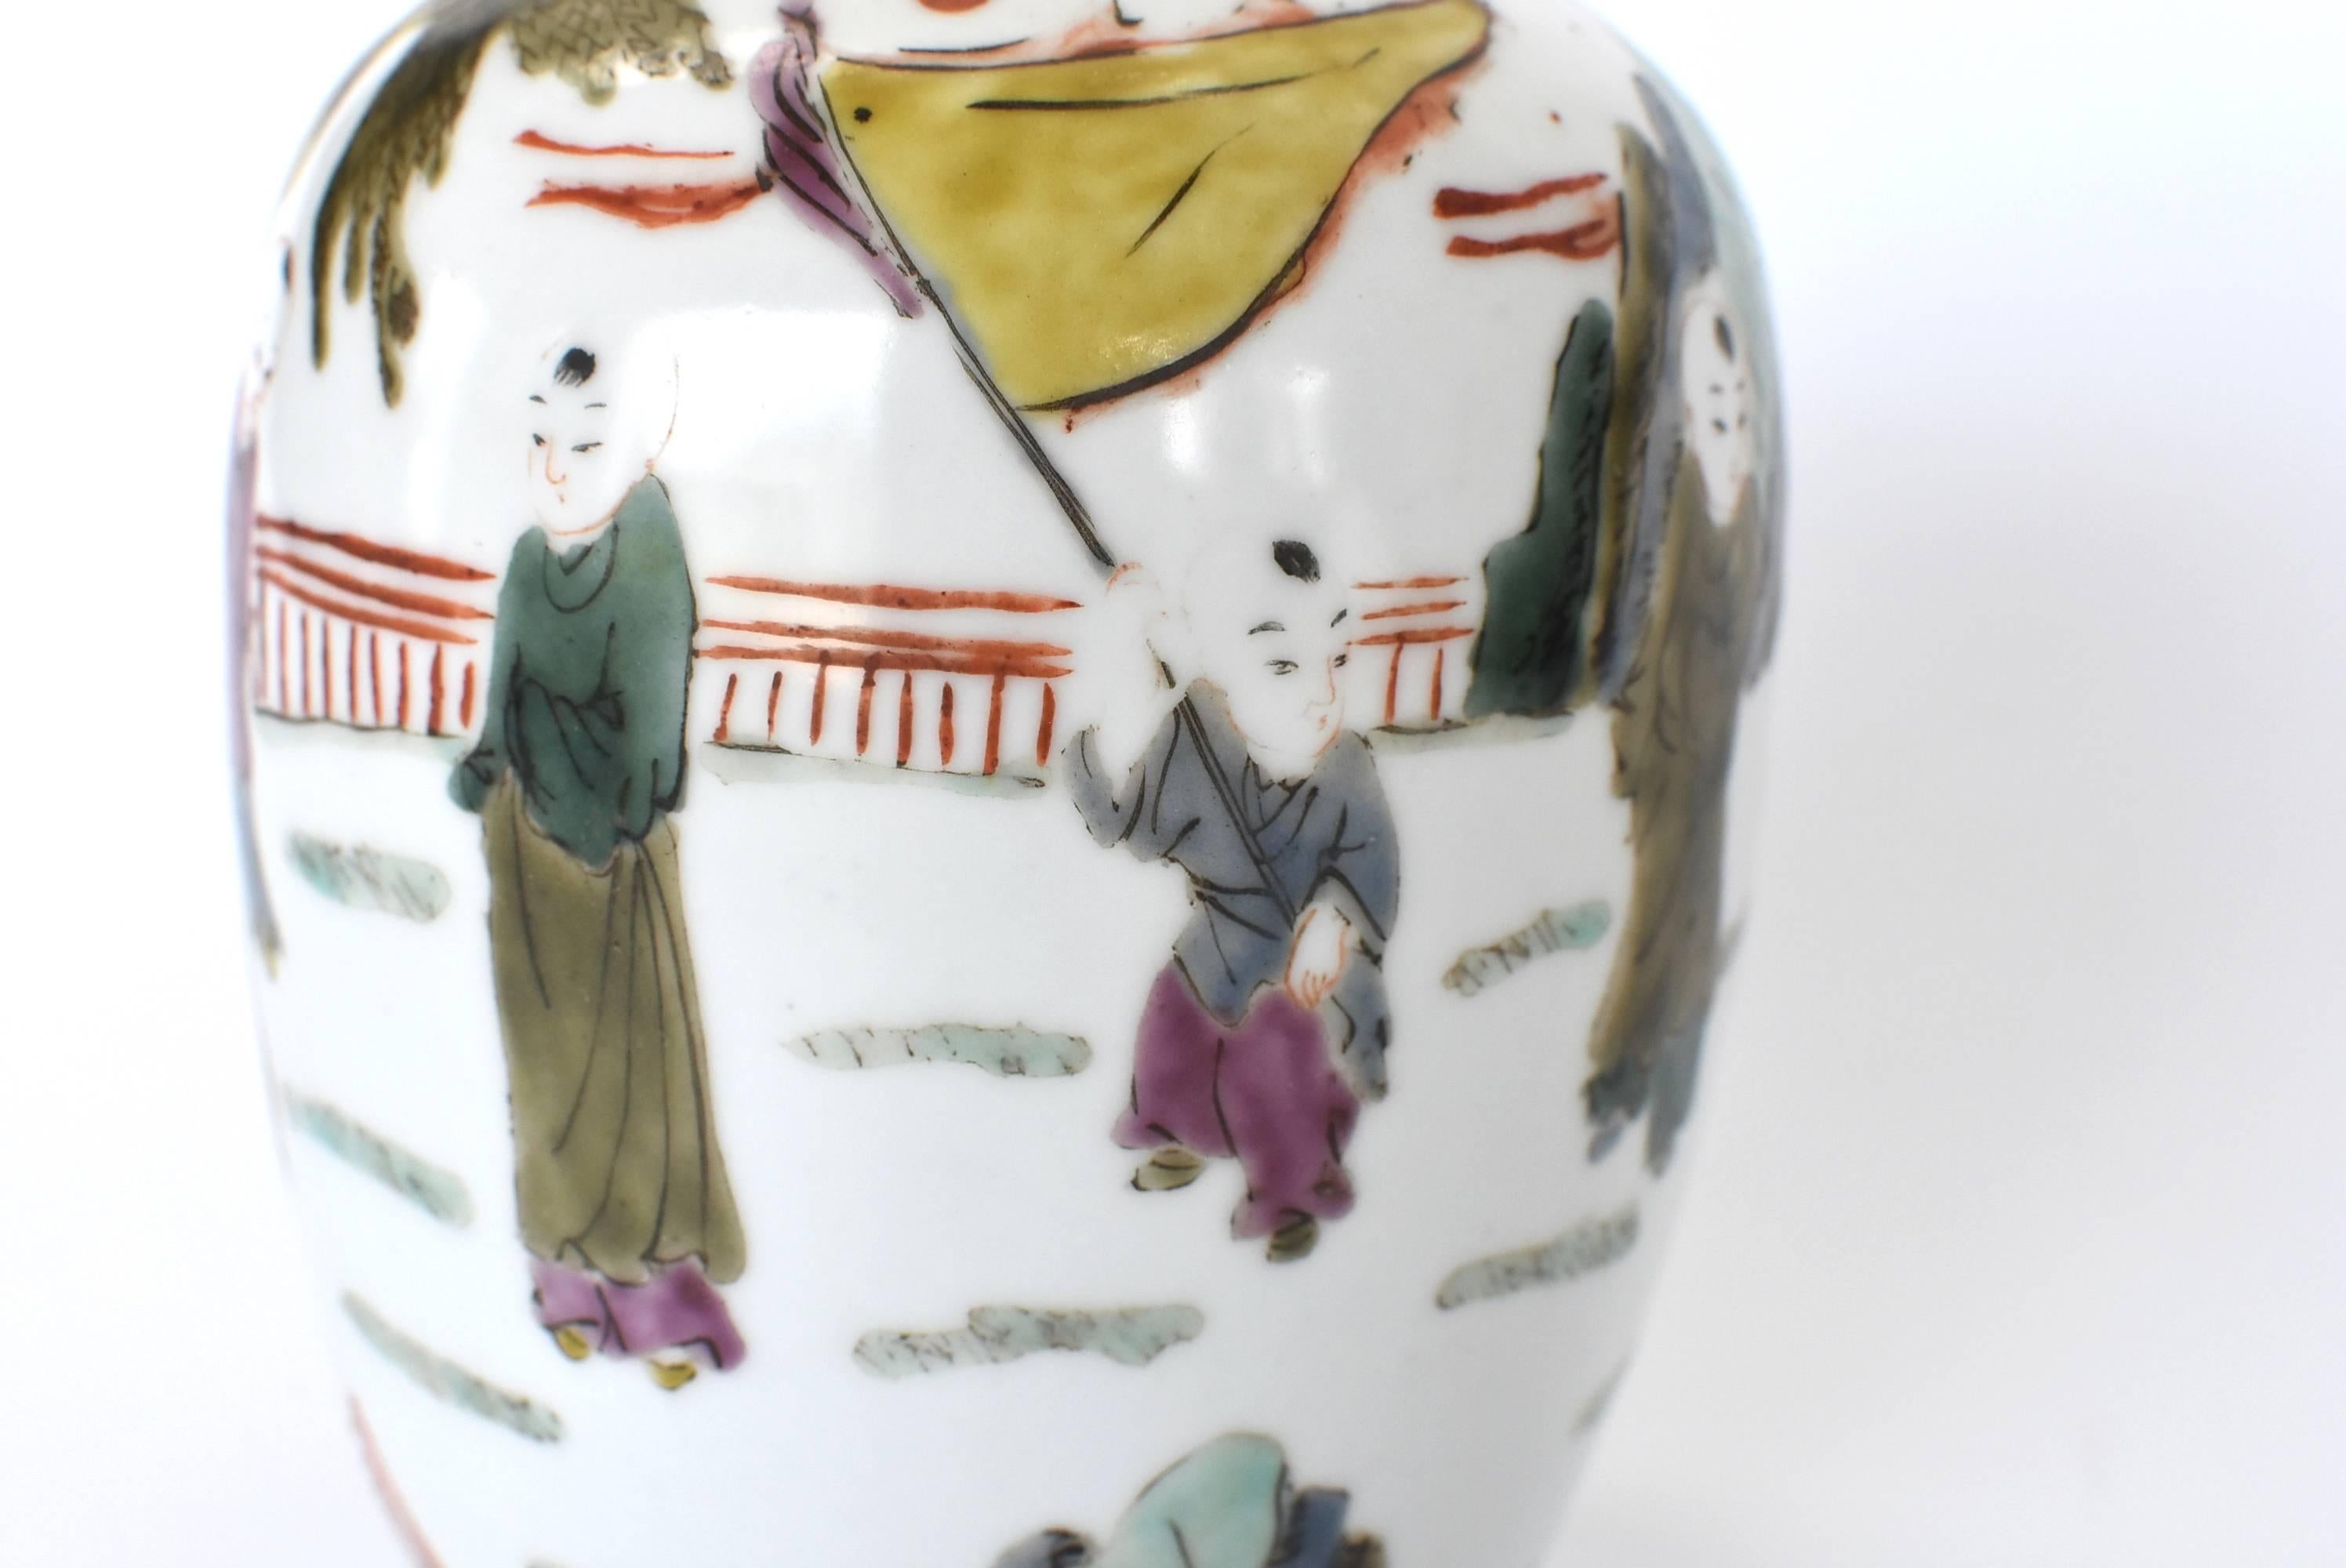 Chinese Porcelain Vase, Republic Era, with Maker's Mark 12